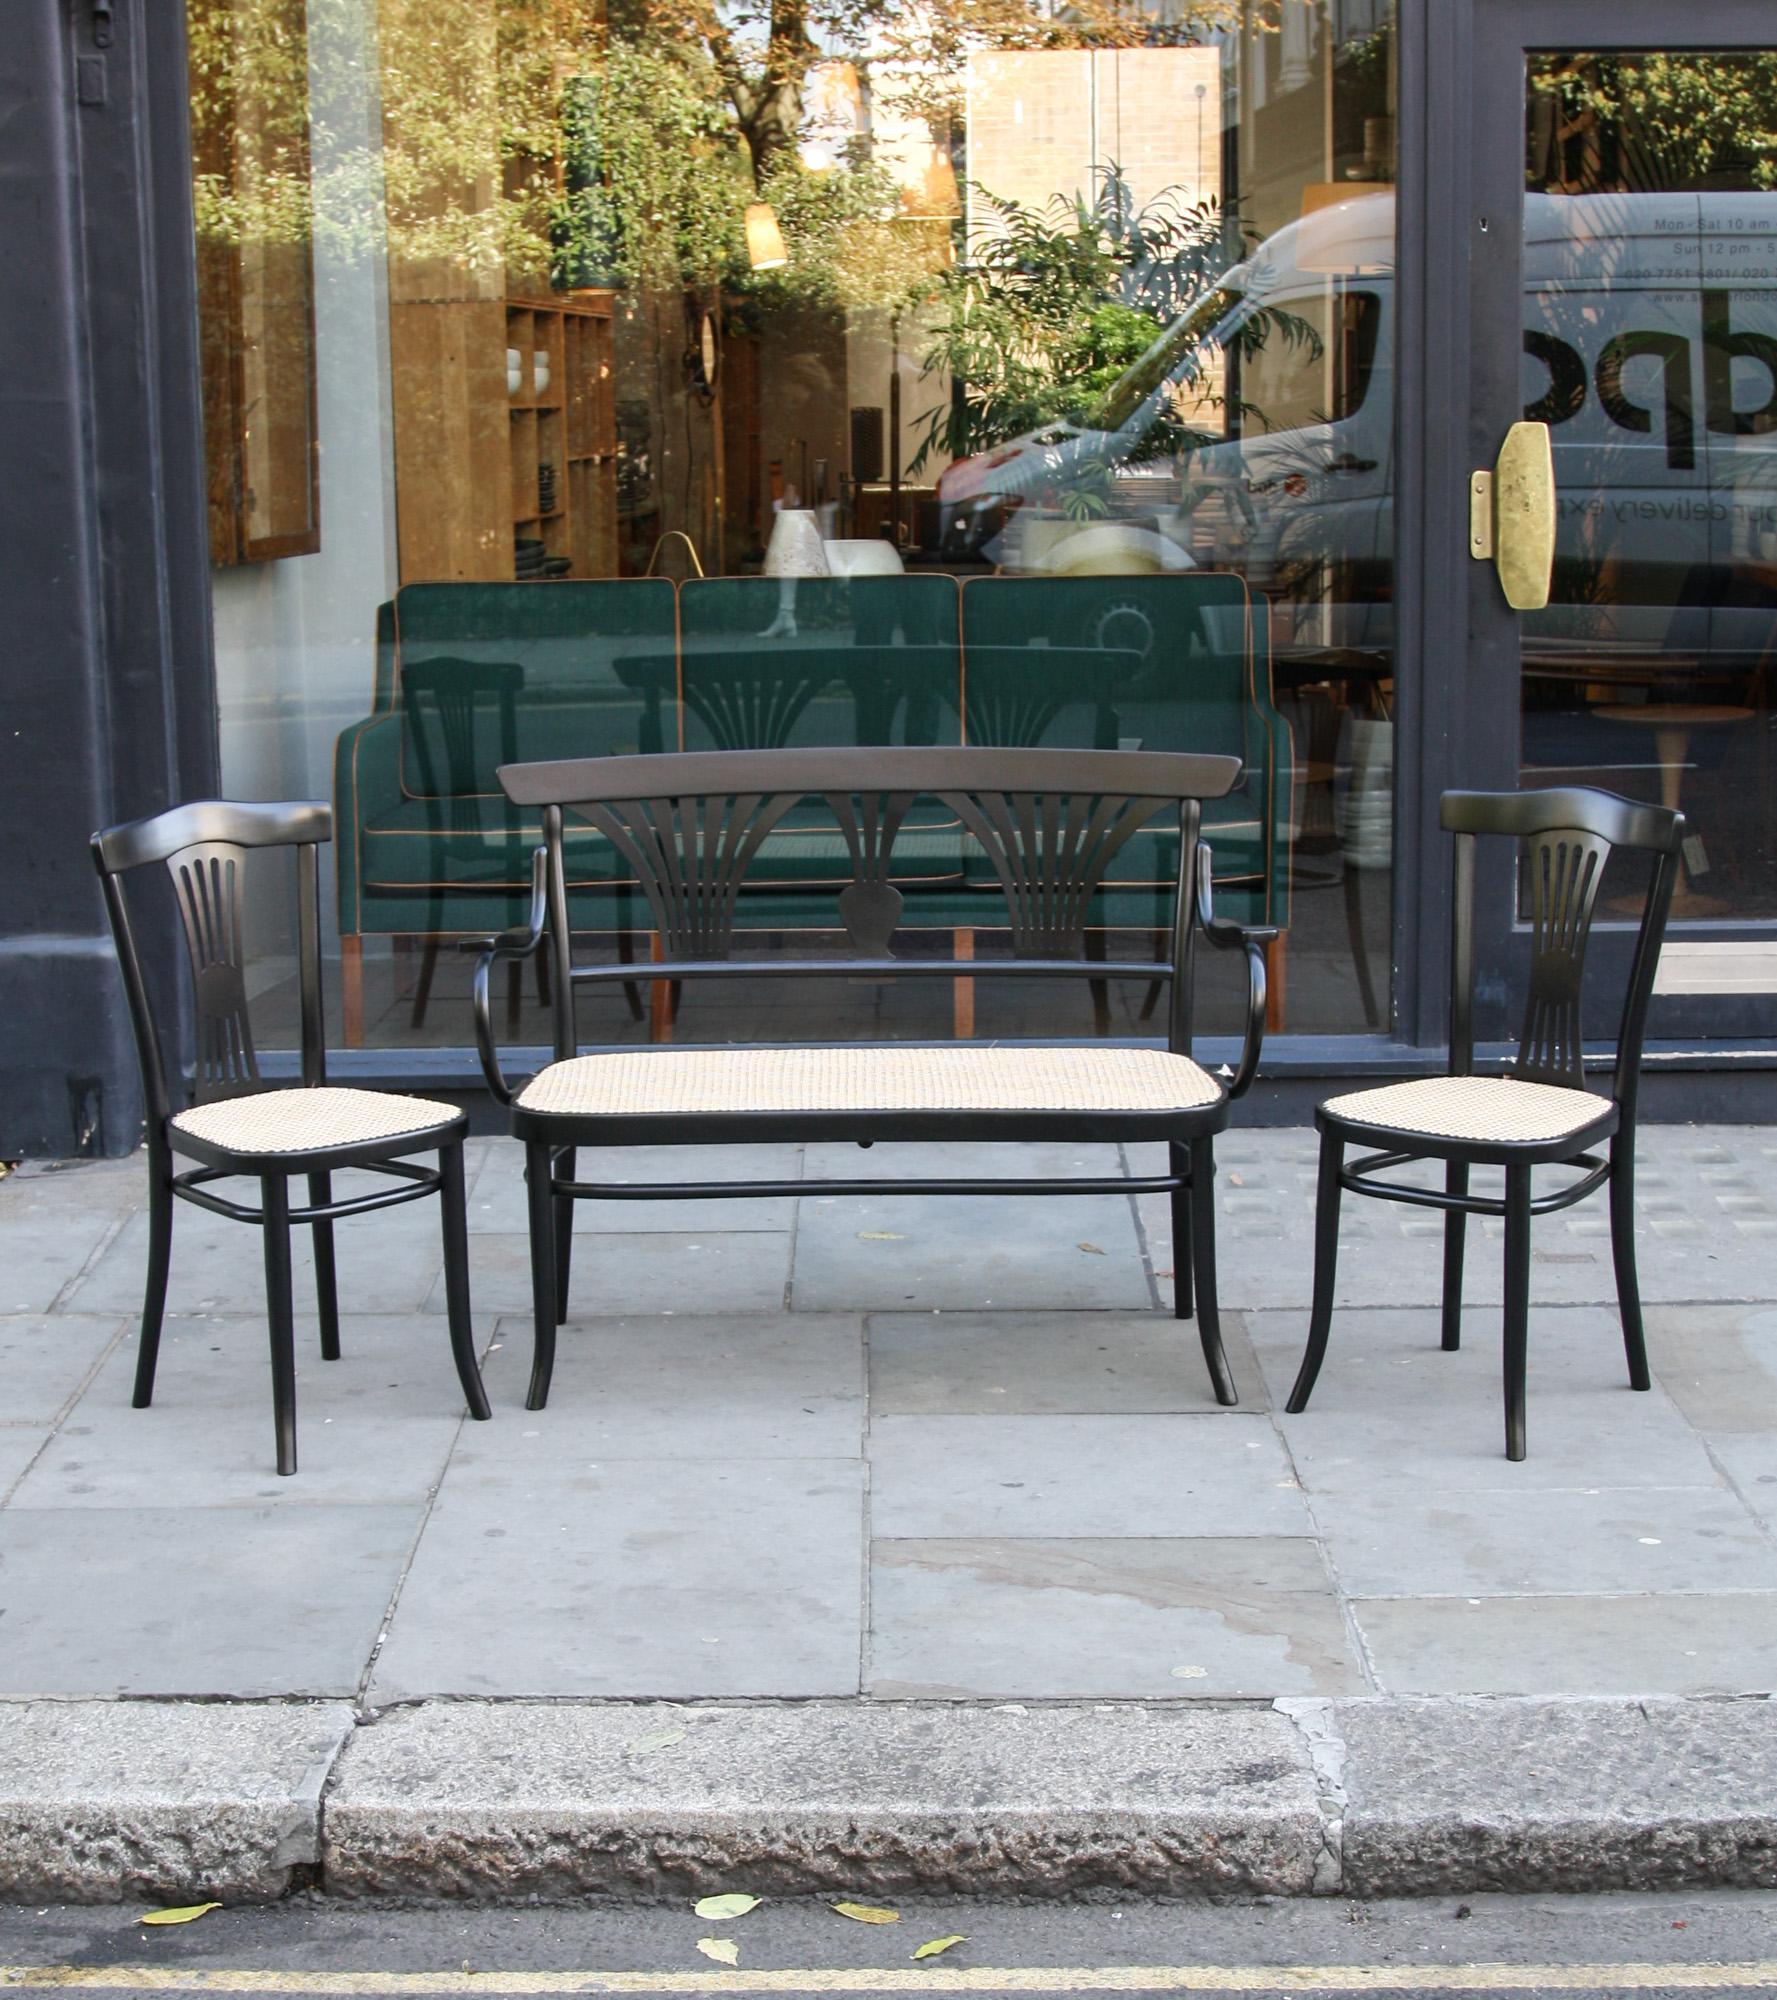 Vintage-Sitzgruppe bestehend aus einer Bank und zwei Stühlen aus schwarz lackiertem, massivem Bugholz von Thonet, Österreich, erste Hälfte des 20. Jahrhunderts.
Das Design stammt aus dem späten 19. Jahrhundert, während die Herstellung definitiv